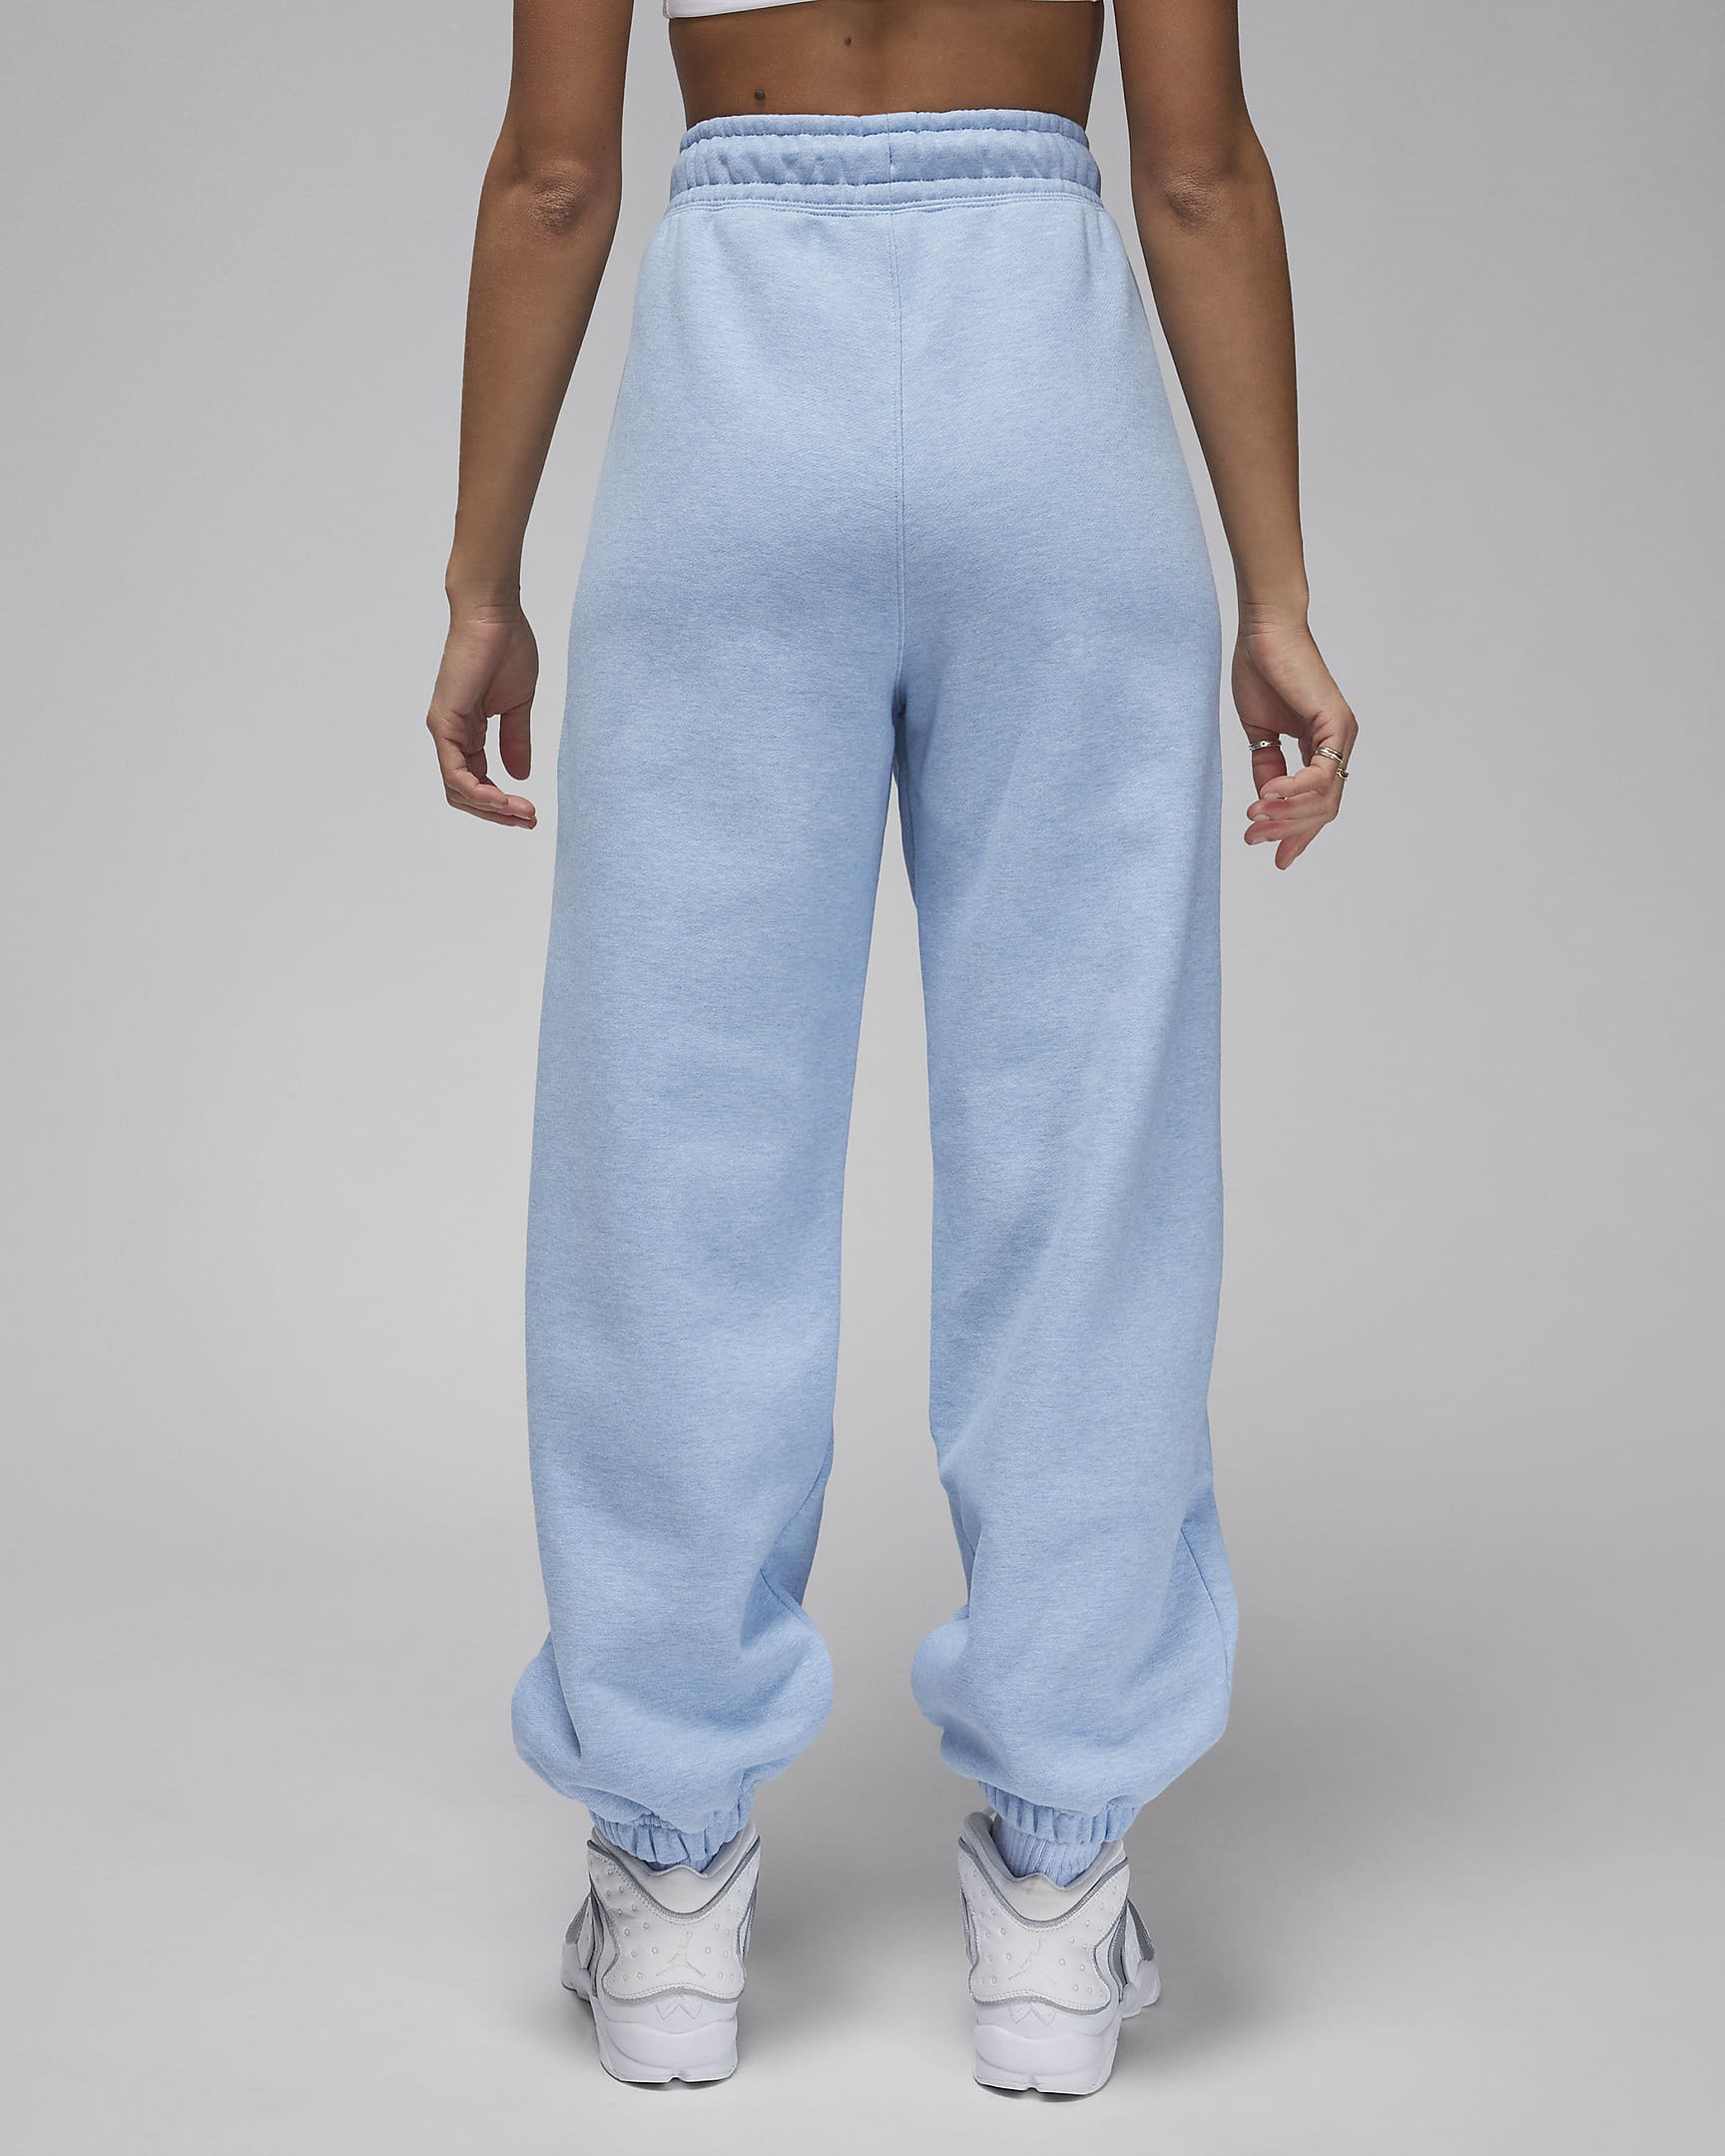 Jordan Flight Fleece Women's Trousers - Blue Grey/Heather